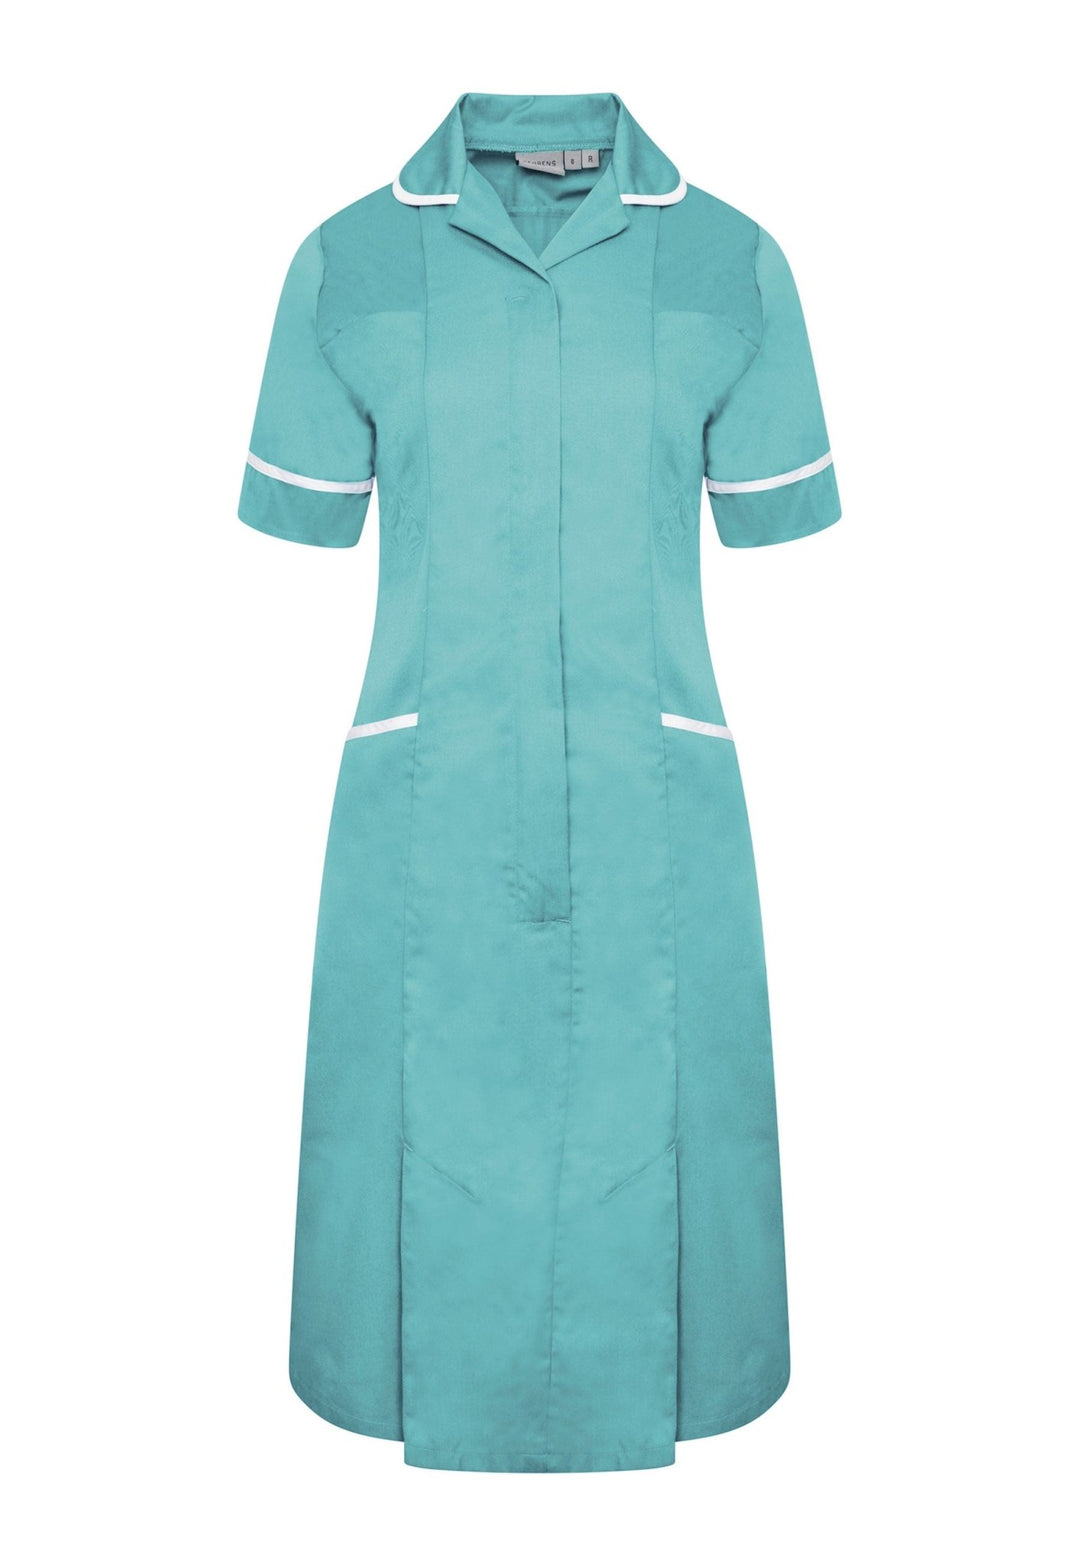 Eau de Nil or Teal Nurse Dress - NCLD - The Work Uniform Company